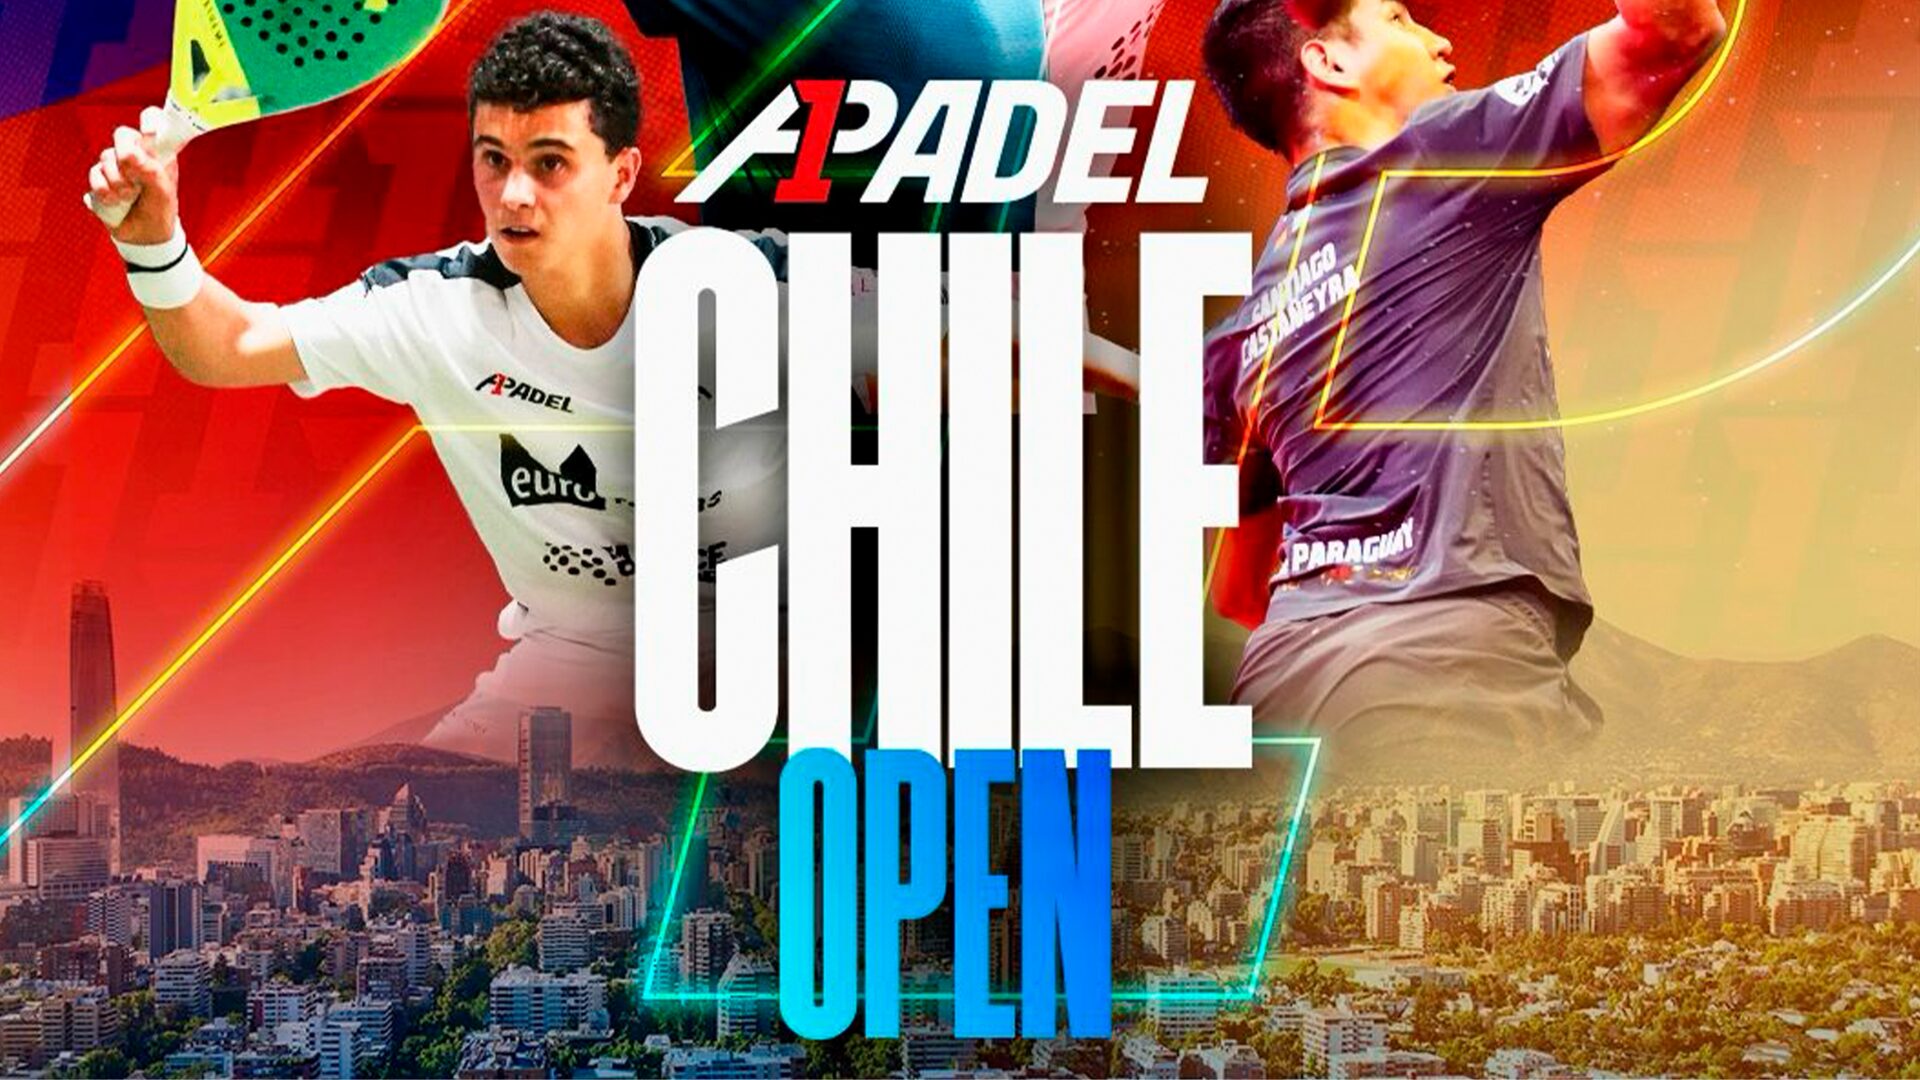 A1 Padel : lad os gå til Chile Open!